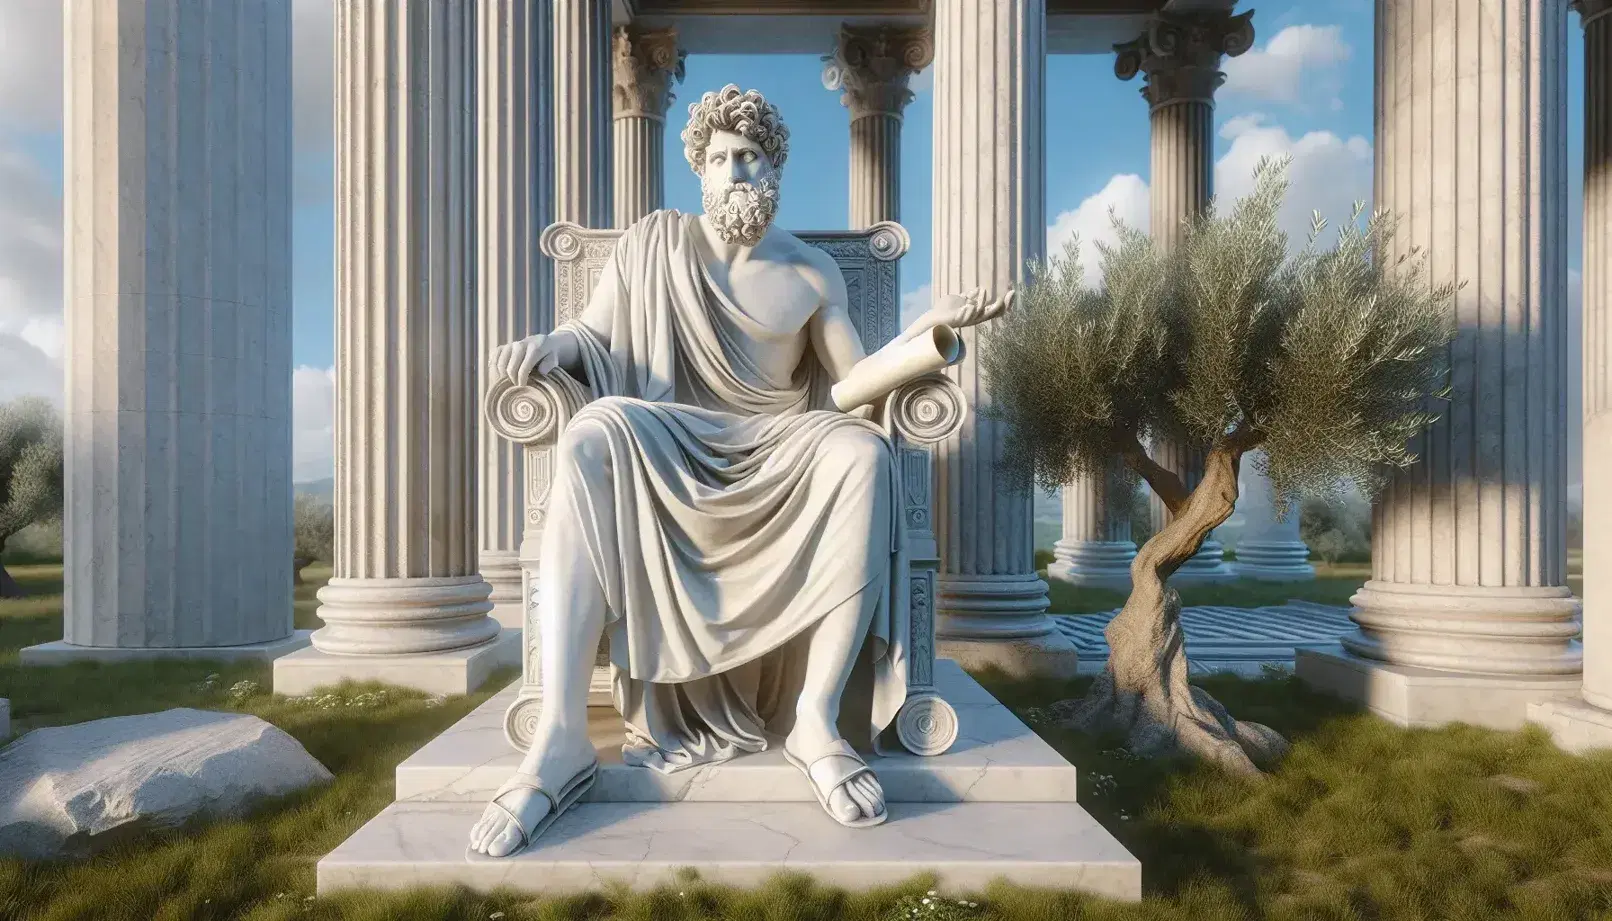 Estatua de mármol blanco de hombre barbudo sentado en silla clásica con túnica, sosteniendo papiro y gesticulando, rodeado de columnas dóricas, olivo y césped bajo cielo azul.